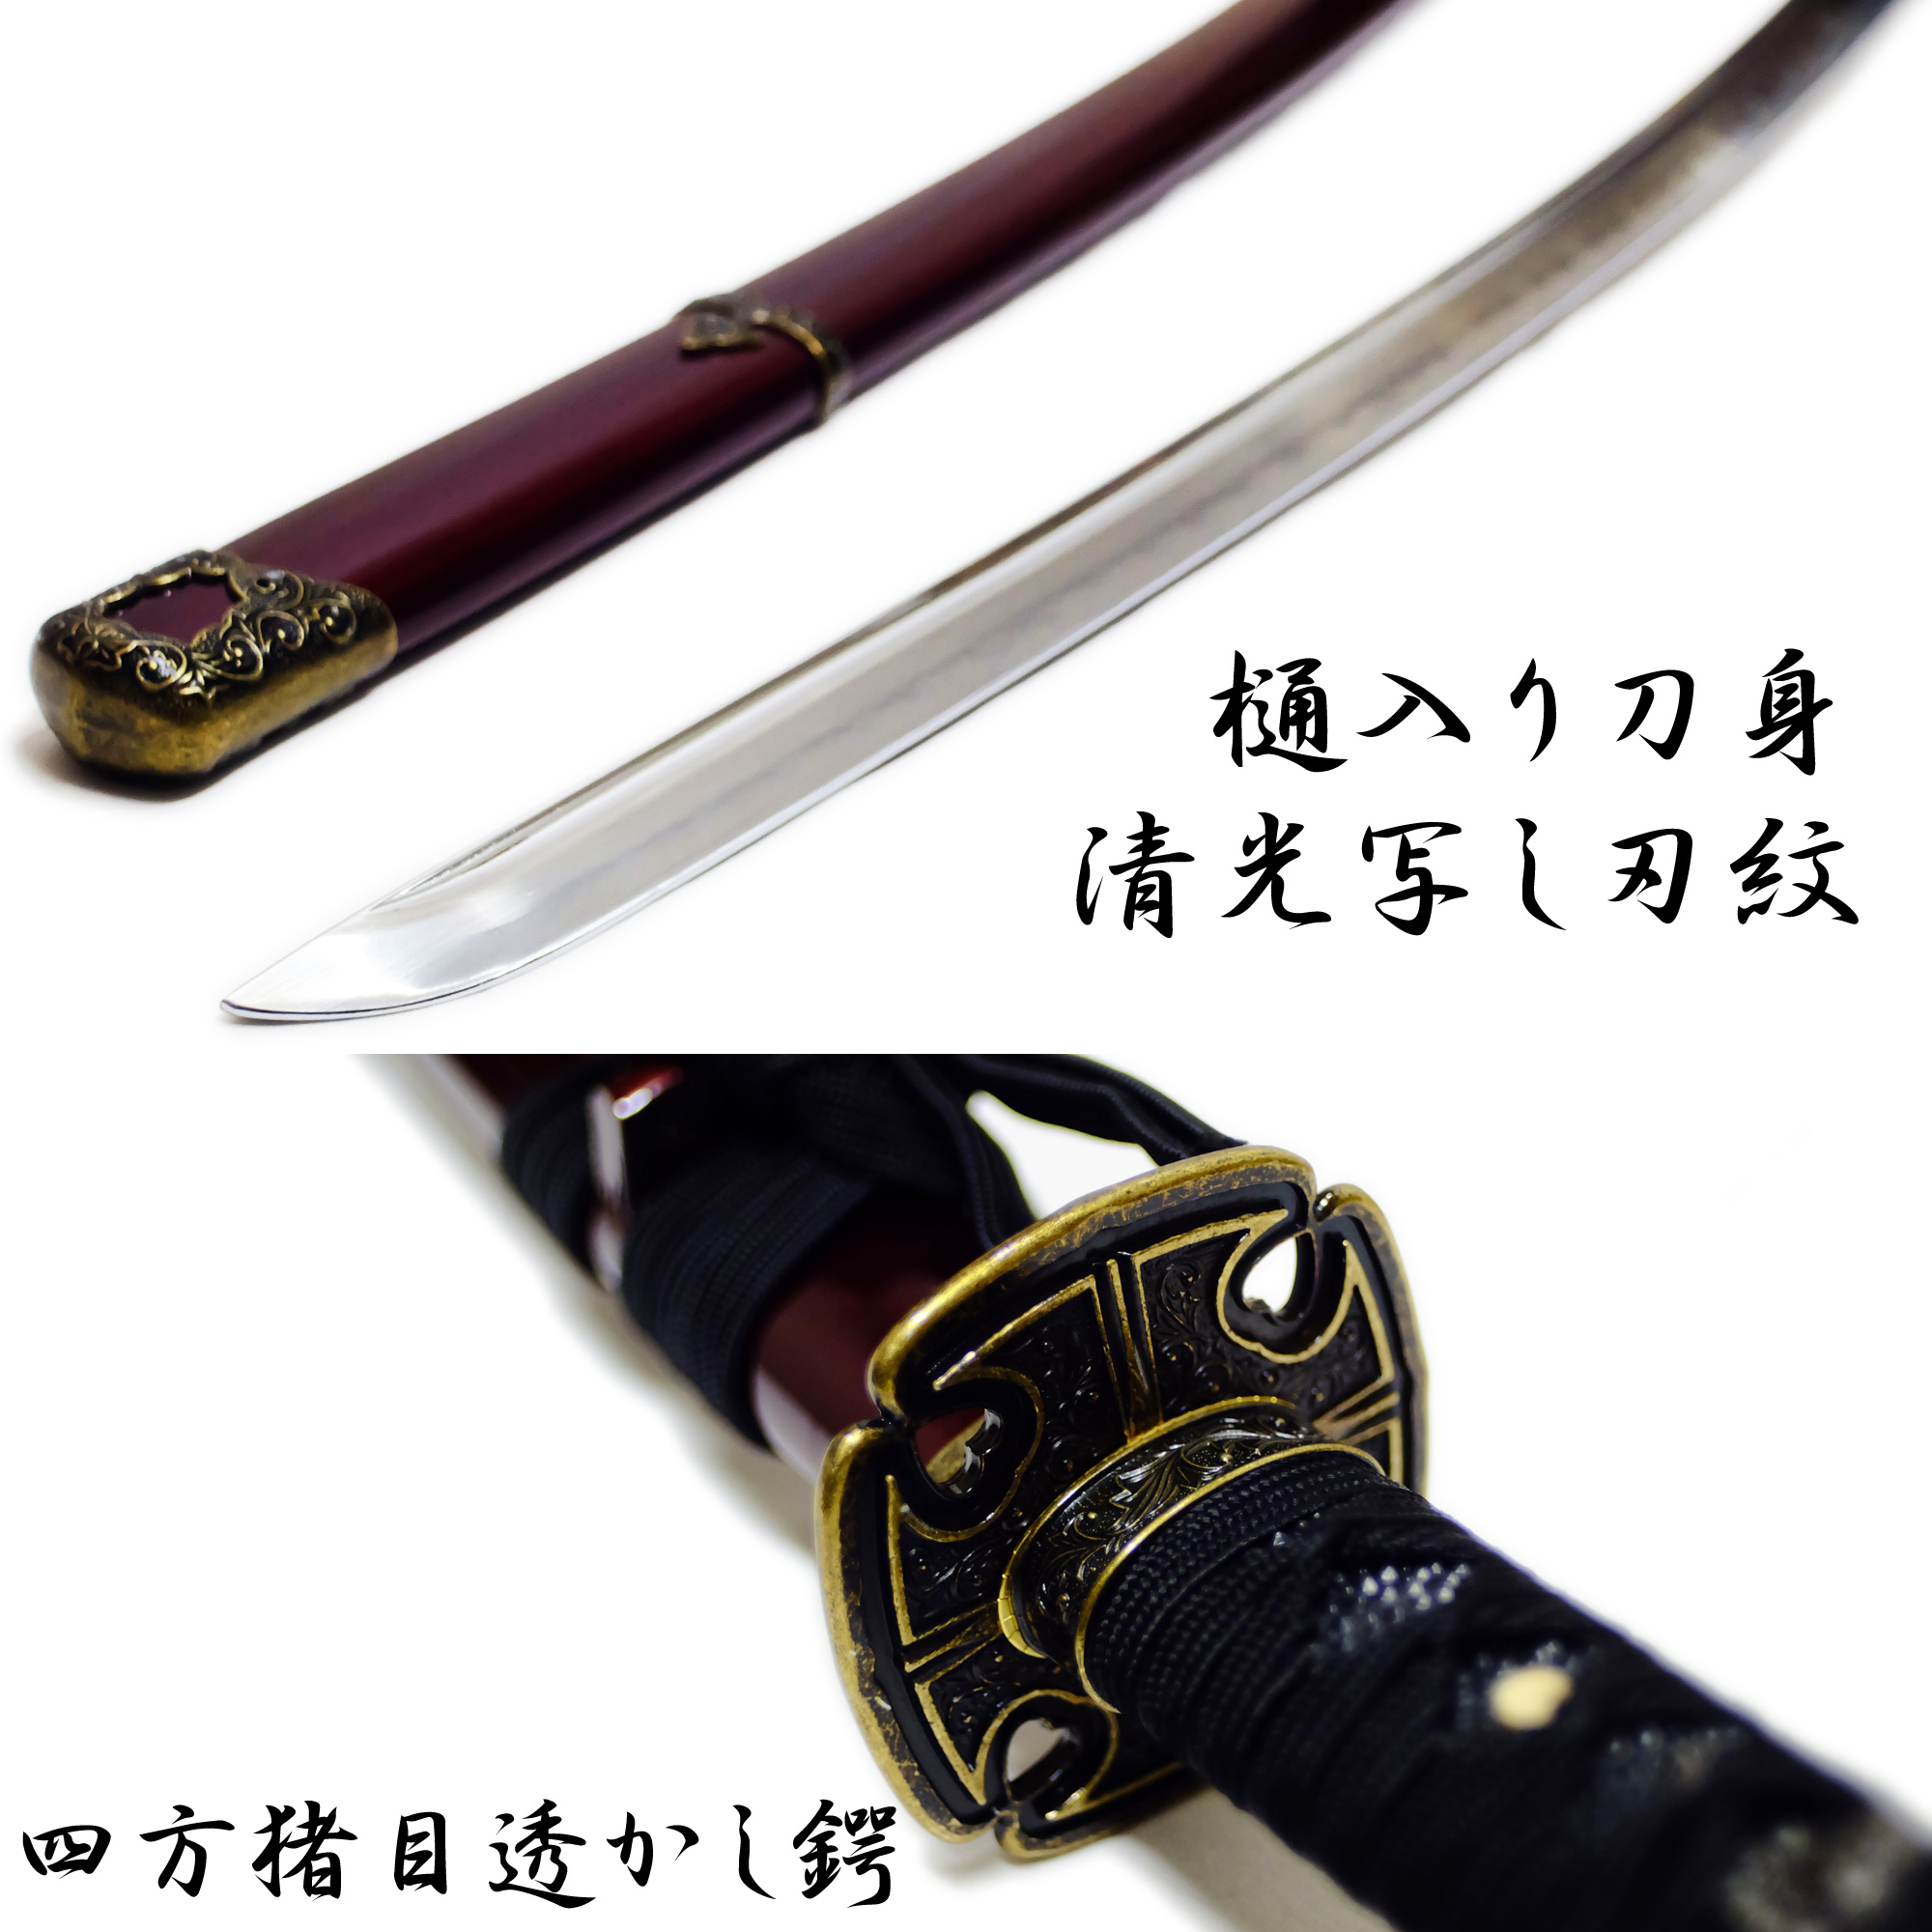 匠刀房 加州清光 大刀 NEU-139 - 刀匠シリーズ 模造刀